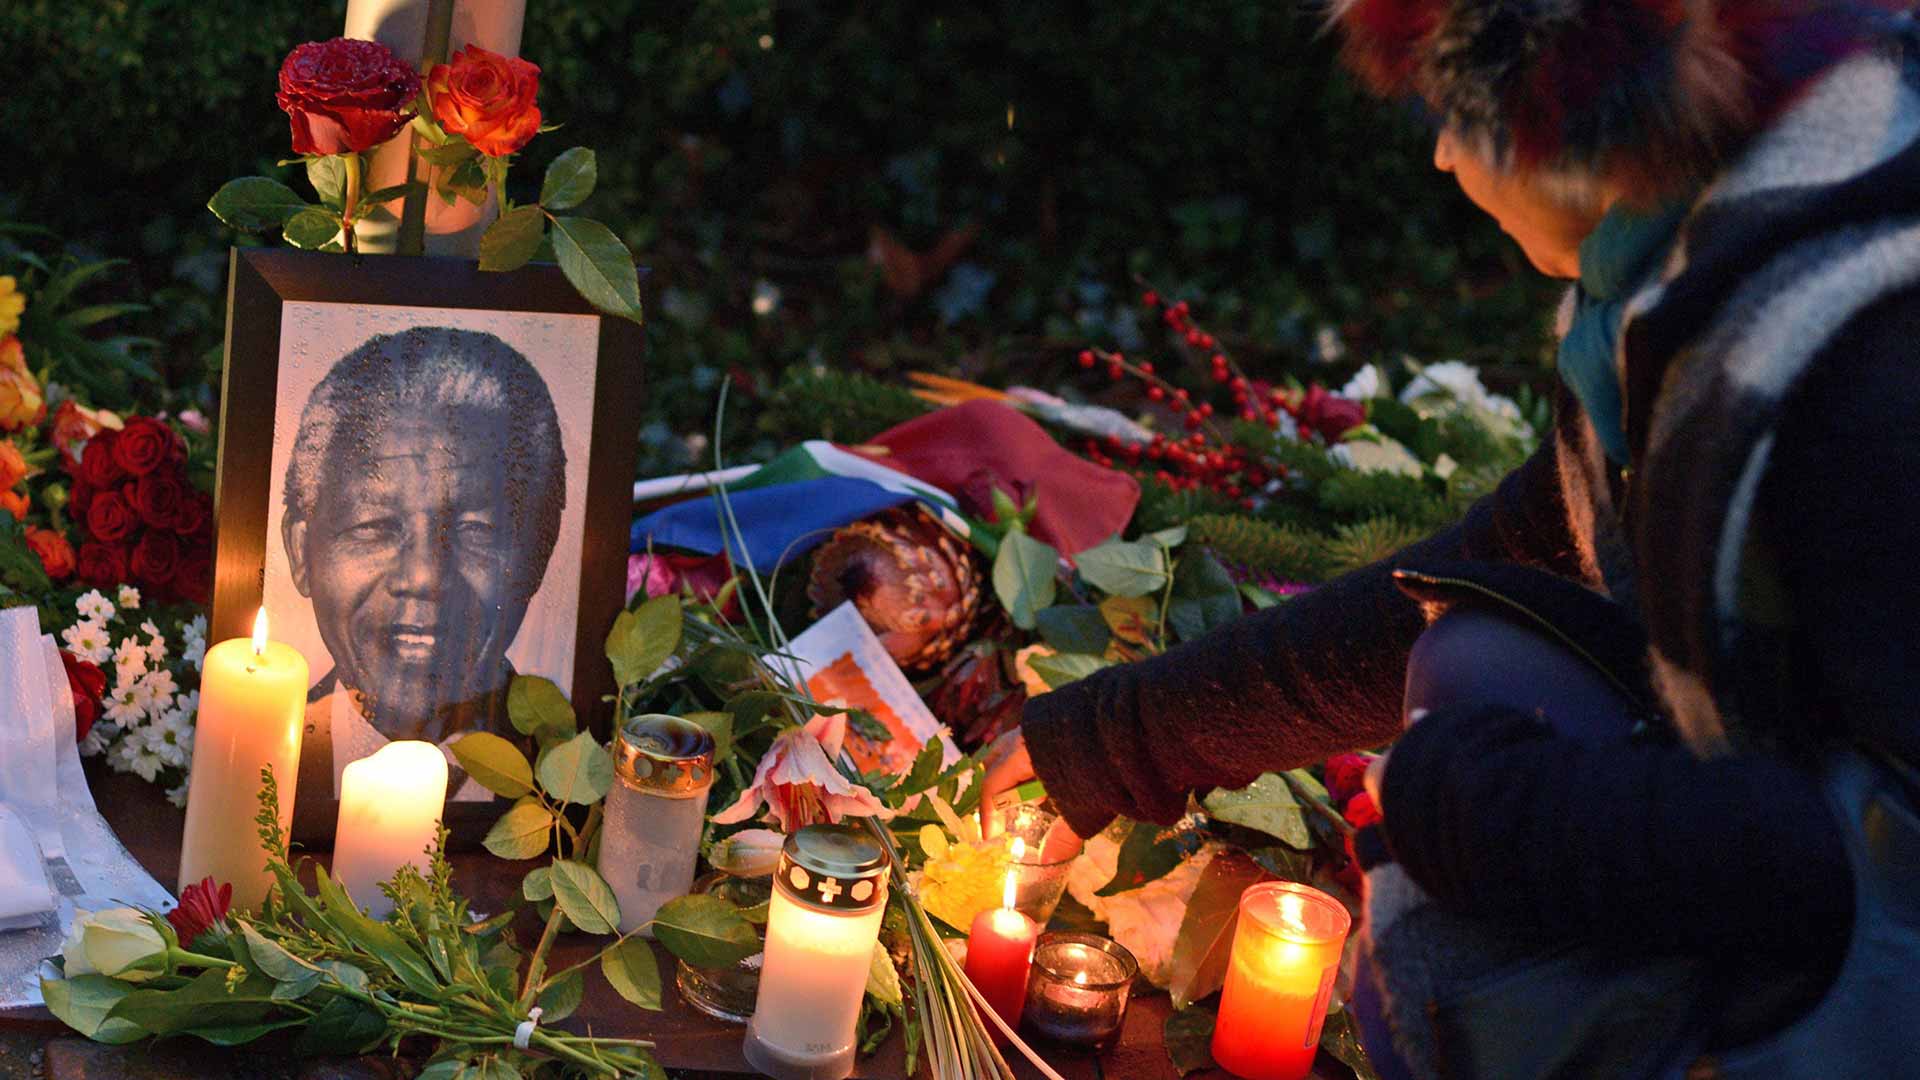 Detectado un gasto millonario irregular en la organización del funeral de Mandela